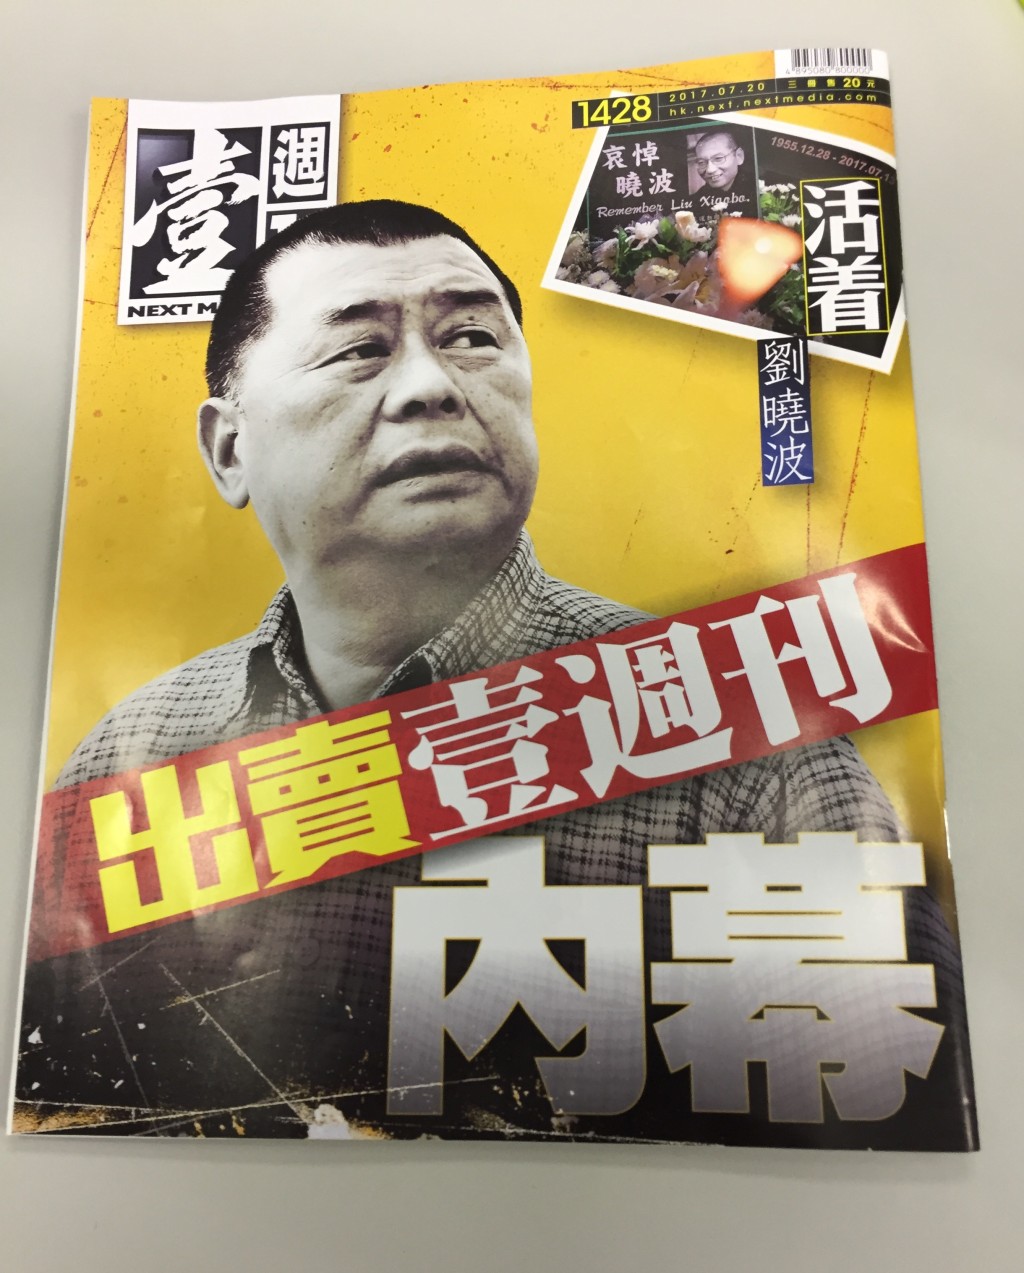 2017年壹傳媒計劃出售《壹週刊》予商人黃浩，雜誌亦以此為封面故事。